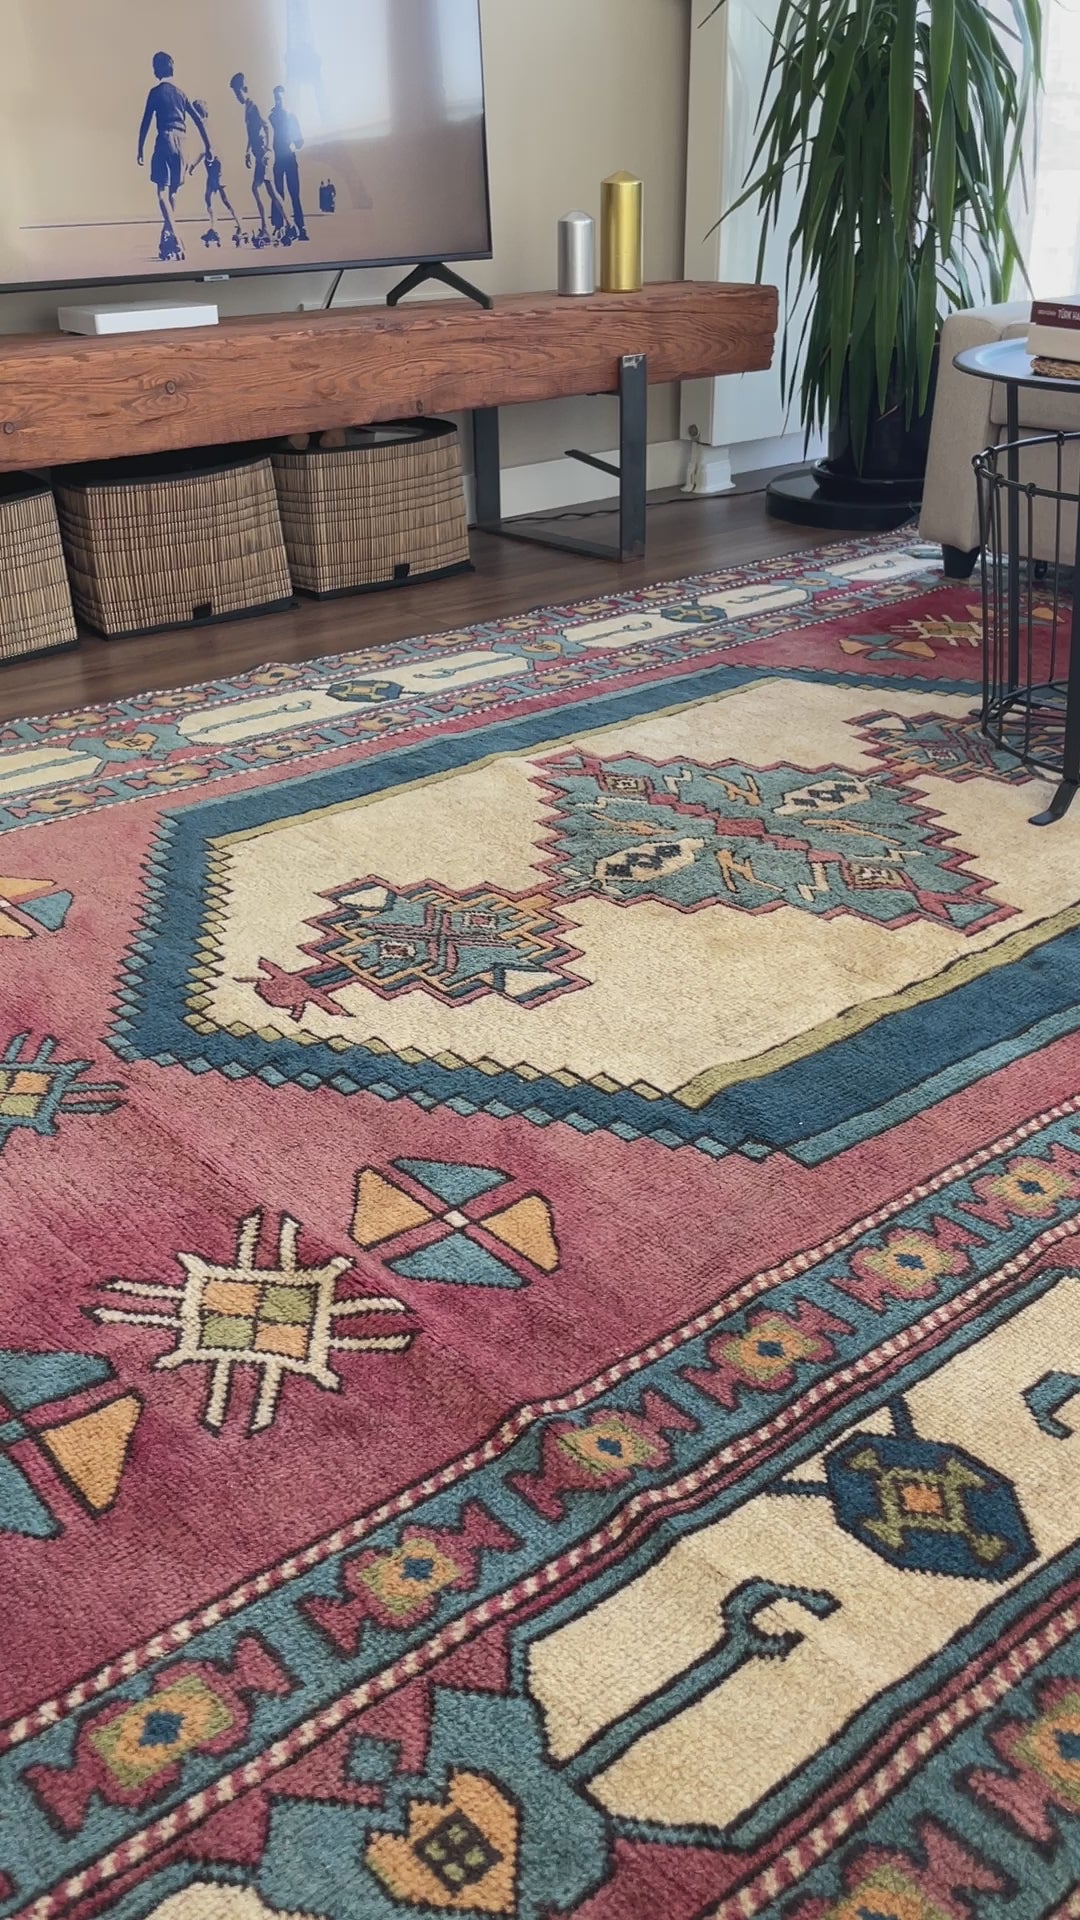 Sultanhani Turkish Rug San francisco bay area oriental rug palo lato vintage rug shop berkeley buy rugs online california toronto canada